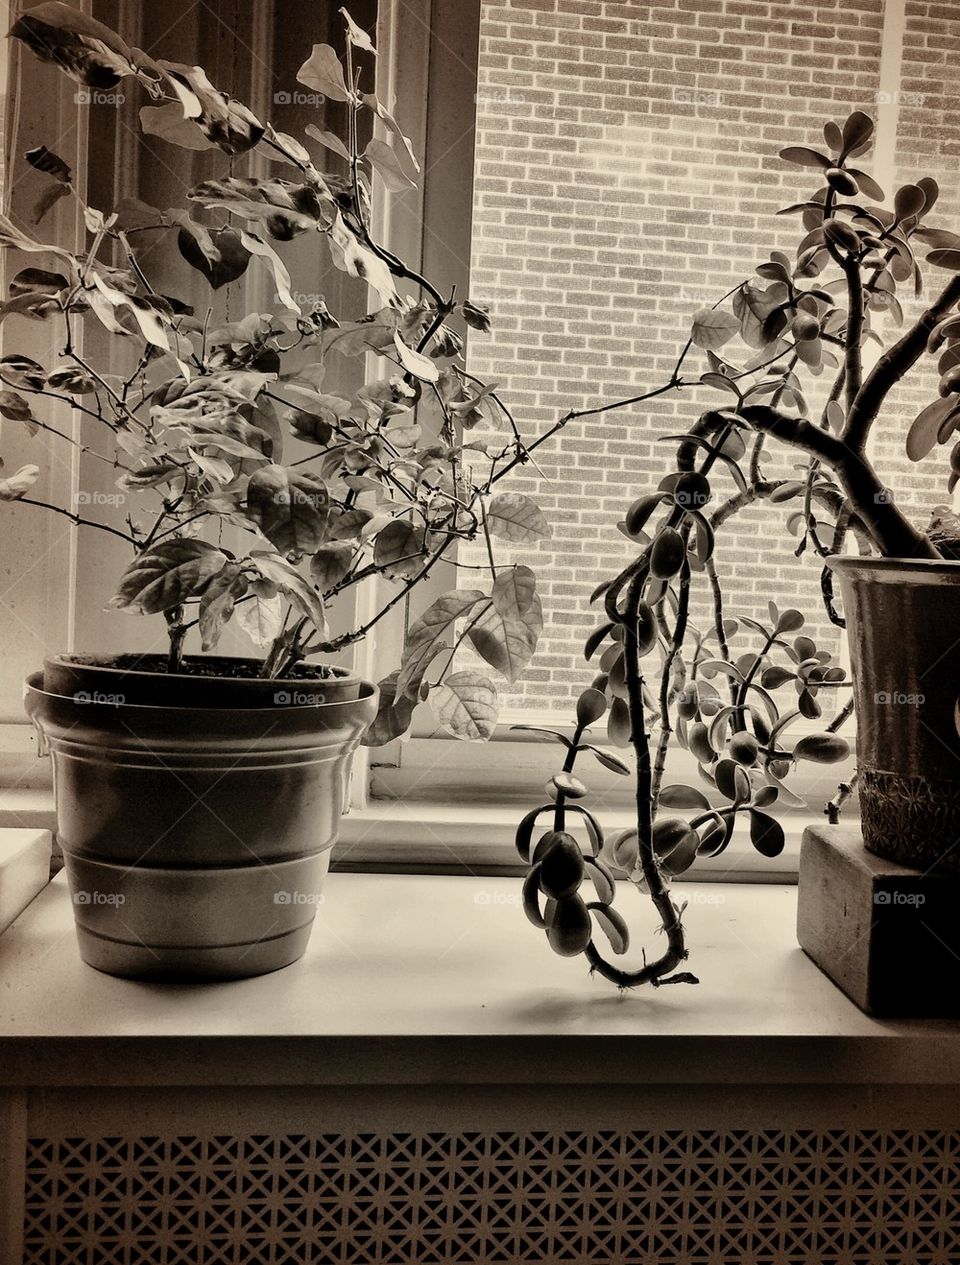 Plants in the window